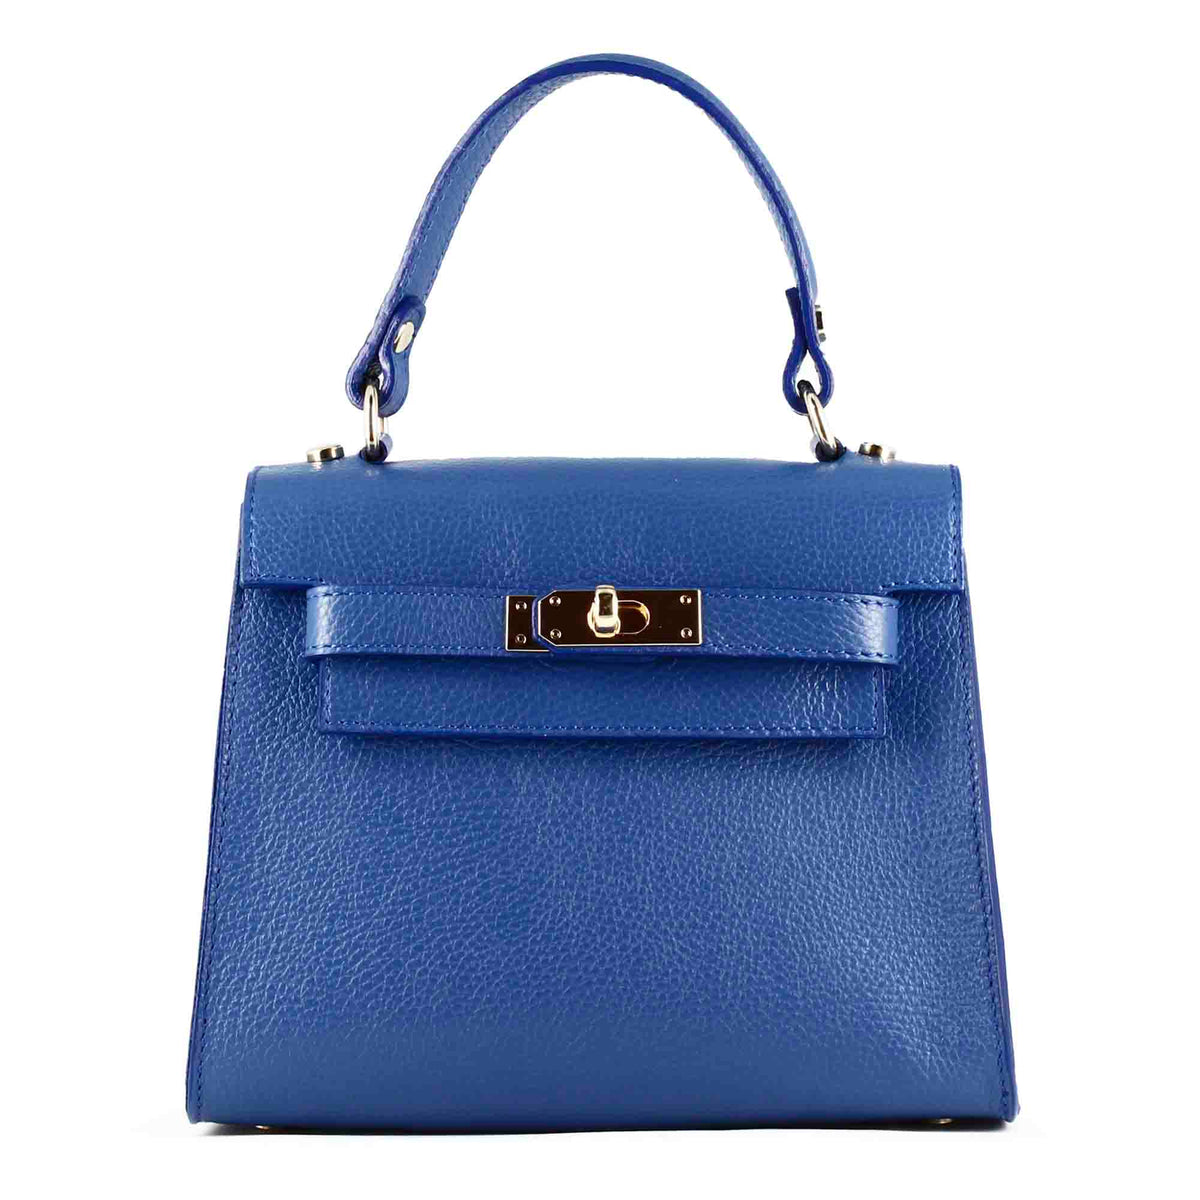 Lady K Damenhandtasche aus blauem Leder